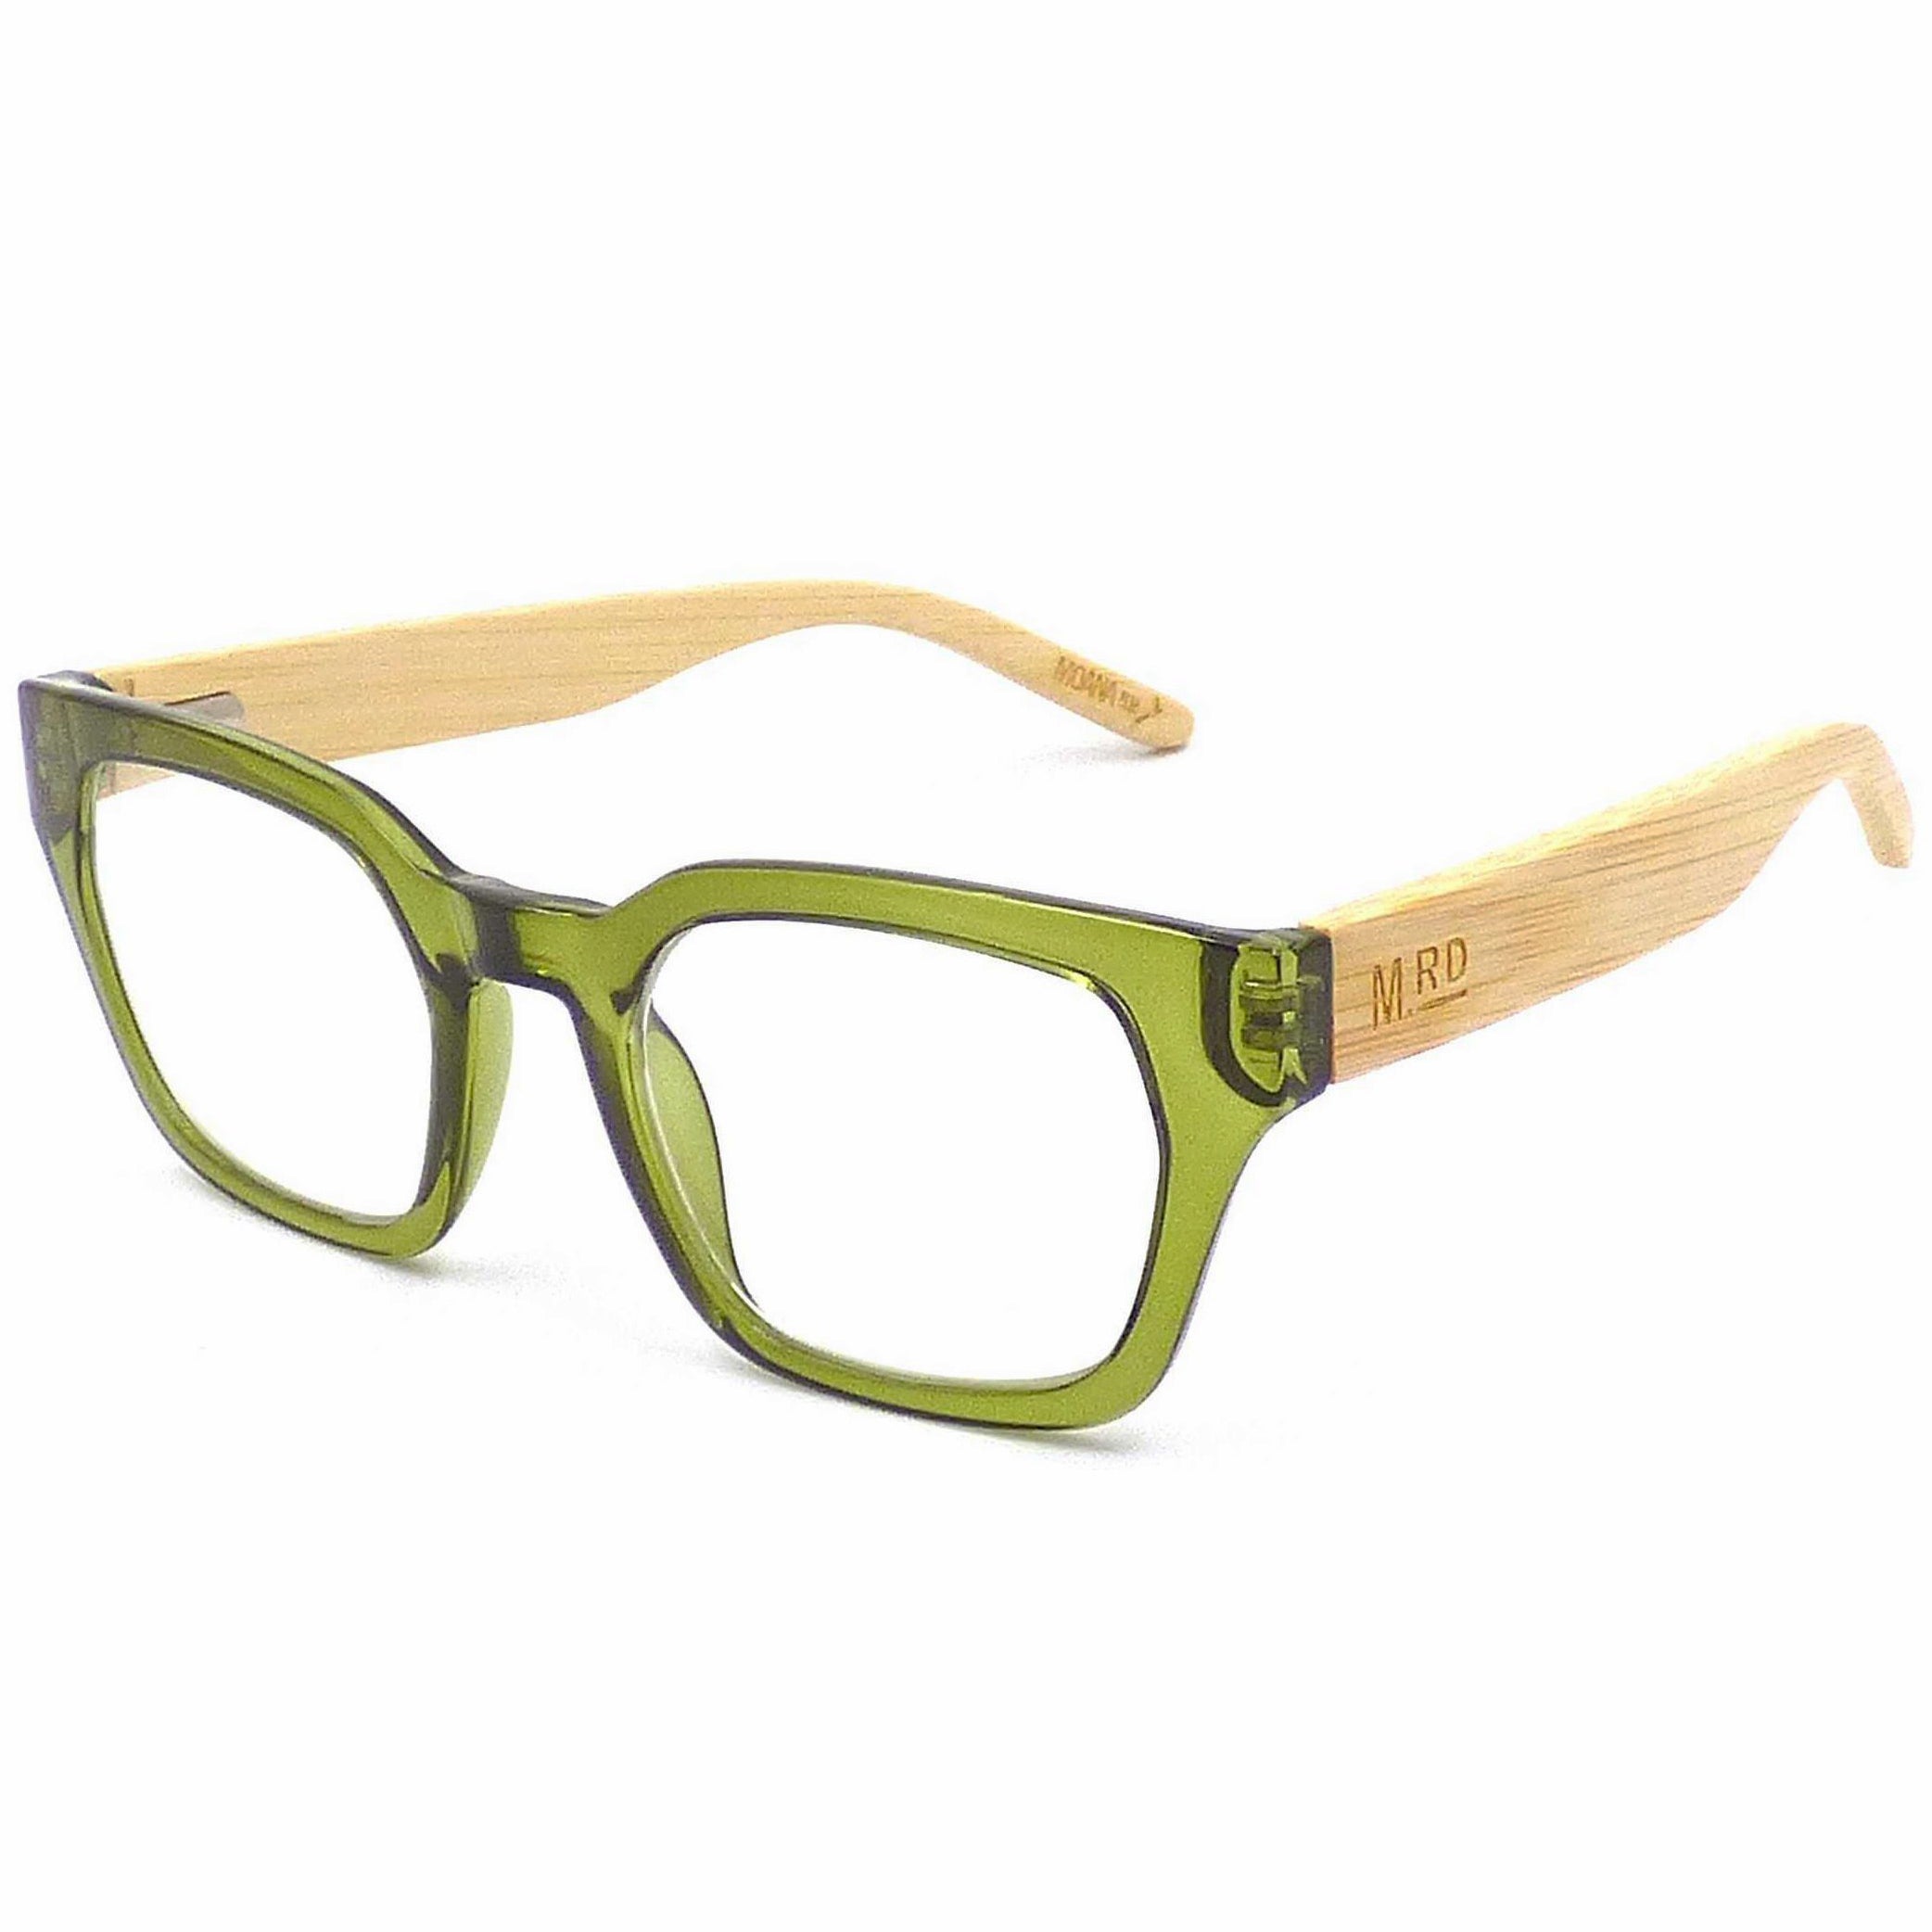 Moana Road Reading Glasses - Green +2.0